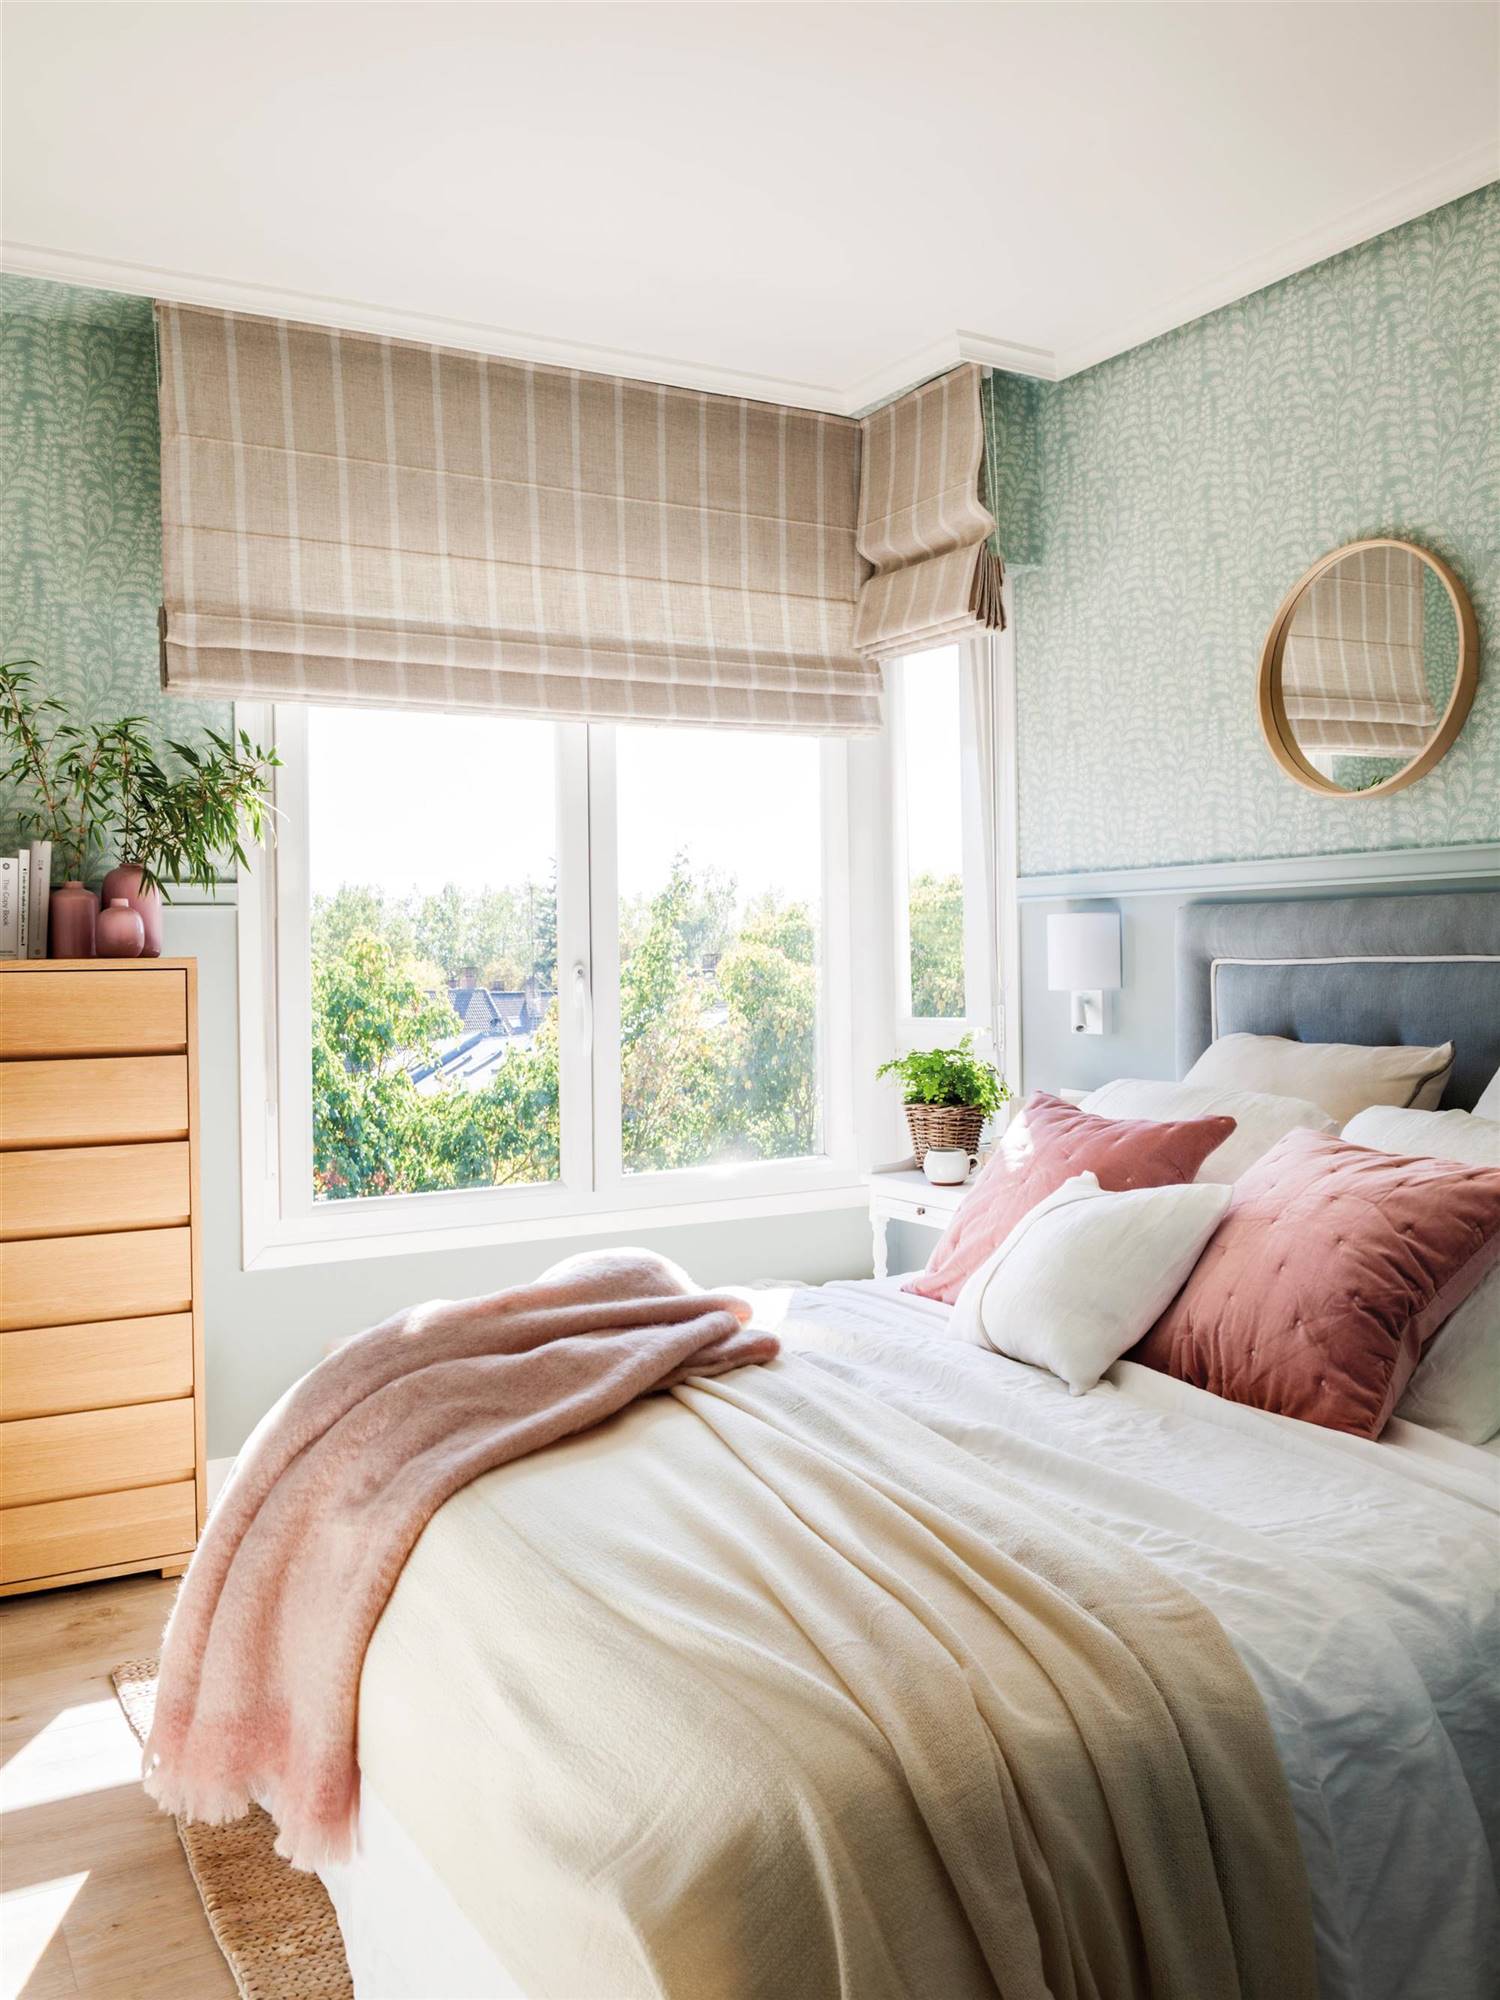 Dormitorio de primavera con papel pintado verde vegetal y estores de rayas en beige.